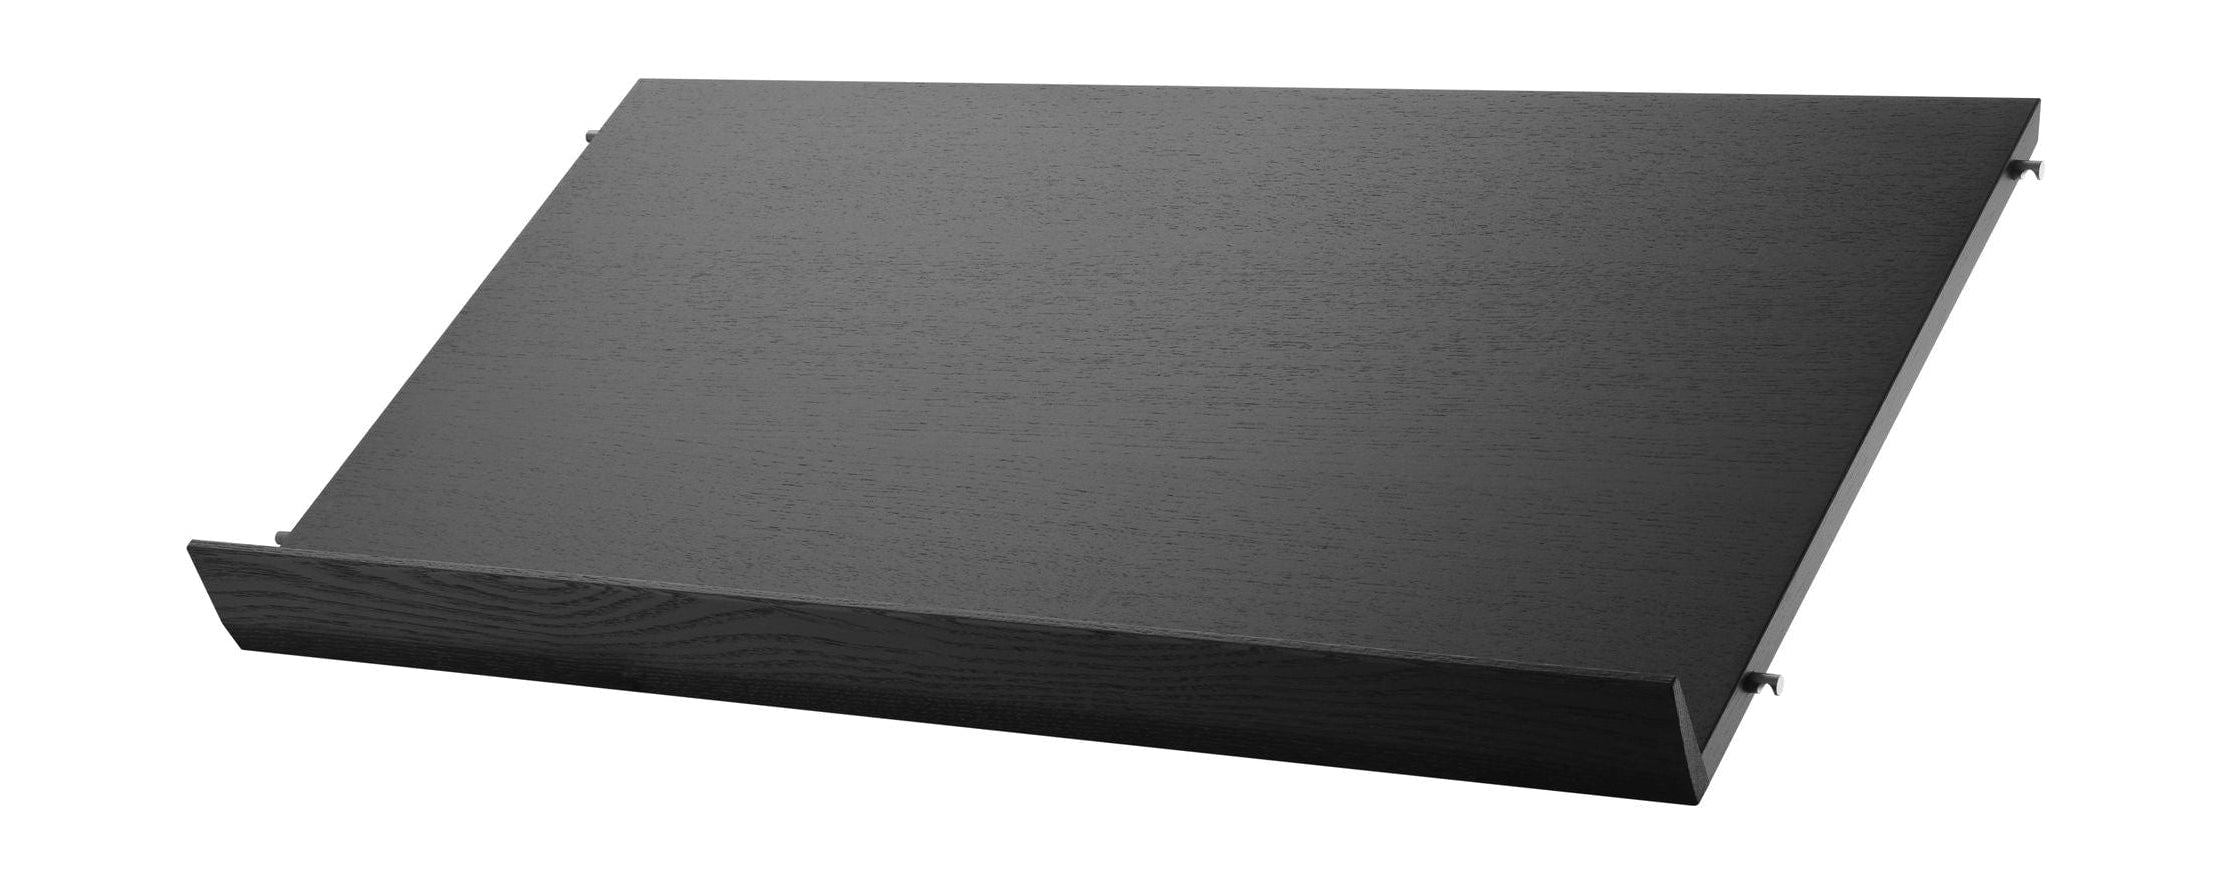 String Furniture Strengsystem Magazine Bakke Træ sort farvet aske, 30x78 cm